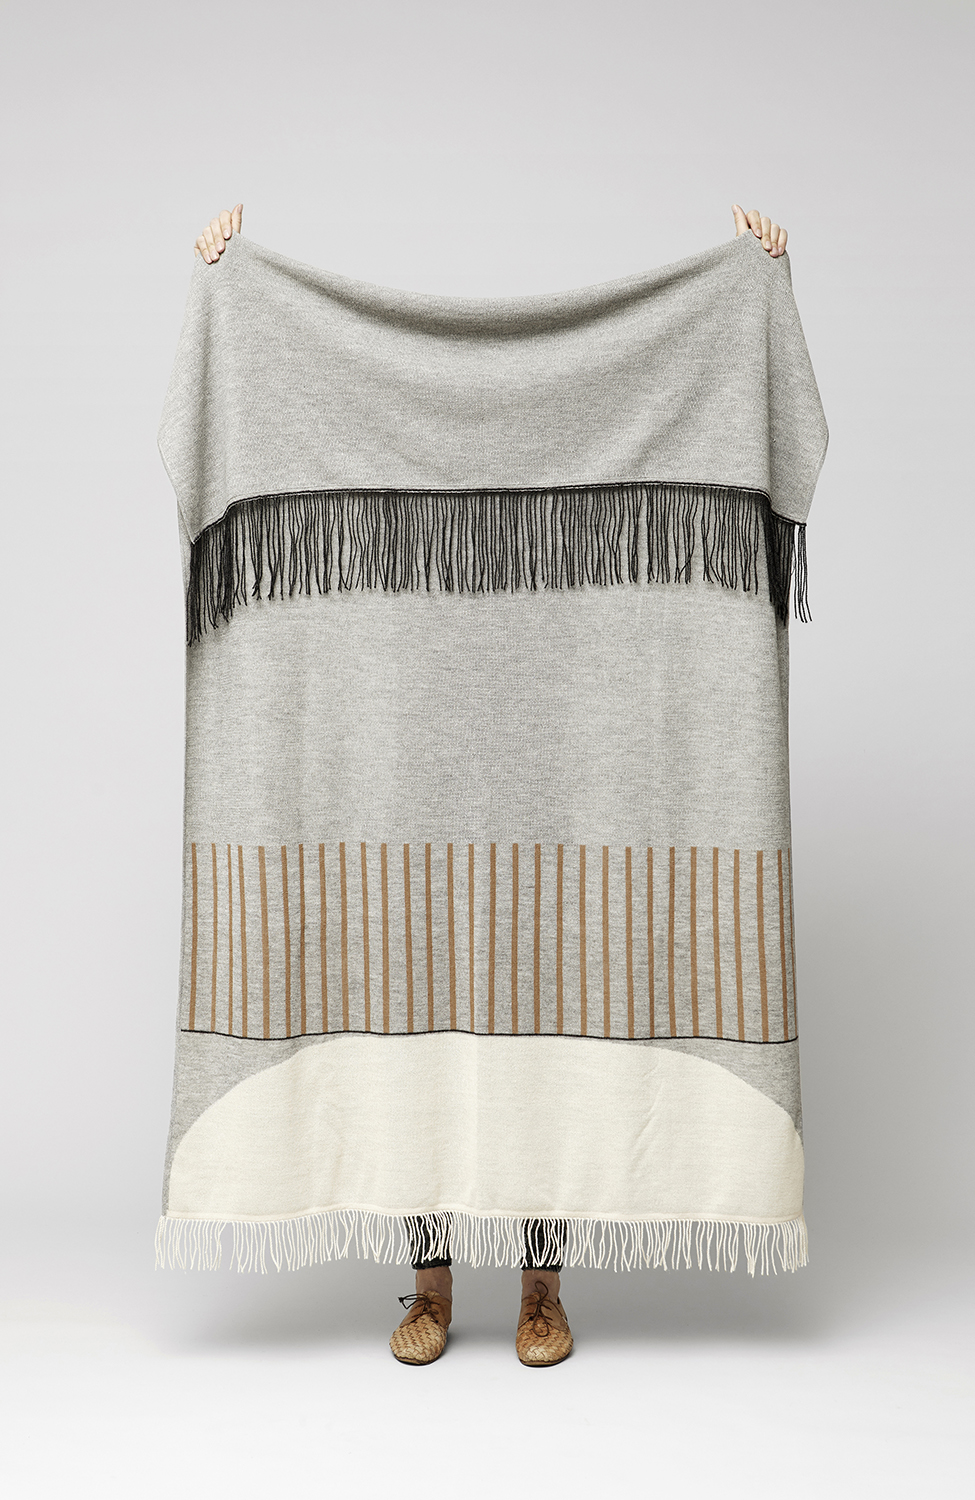 Aymara Textiles